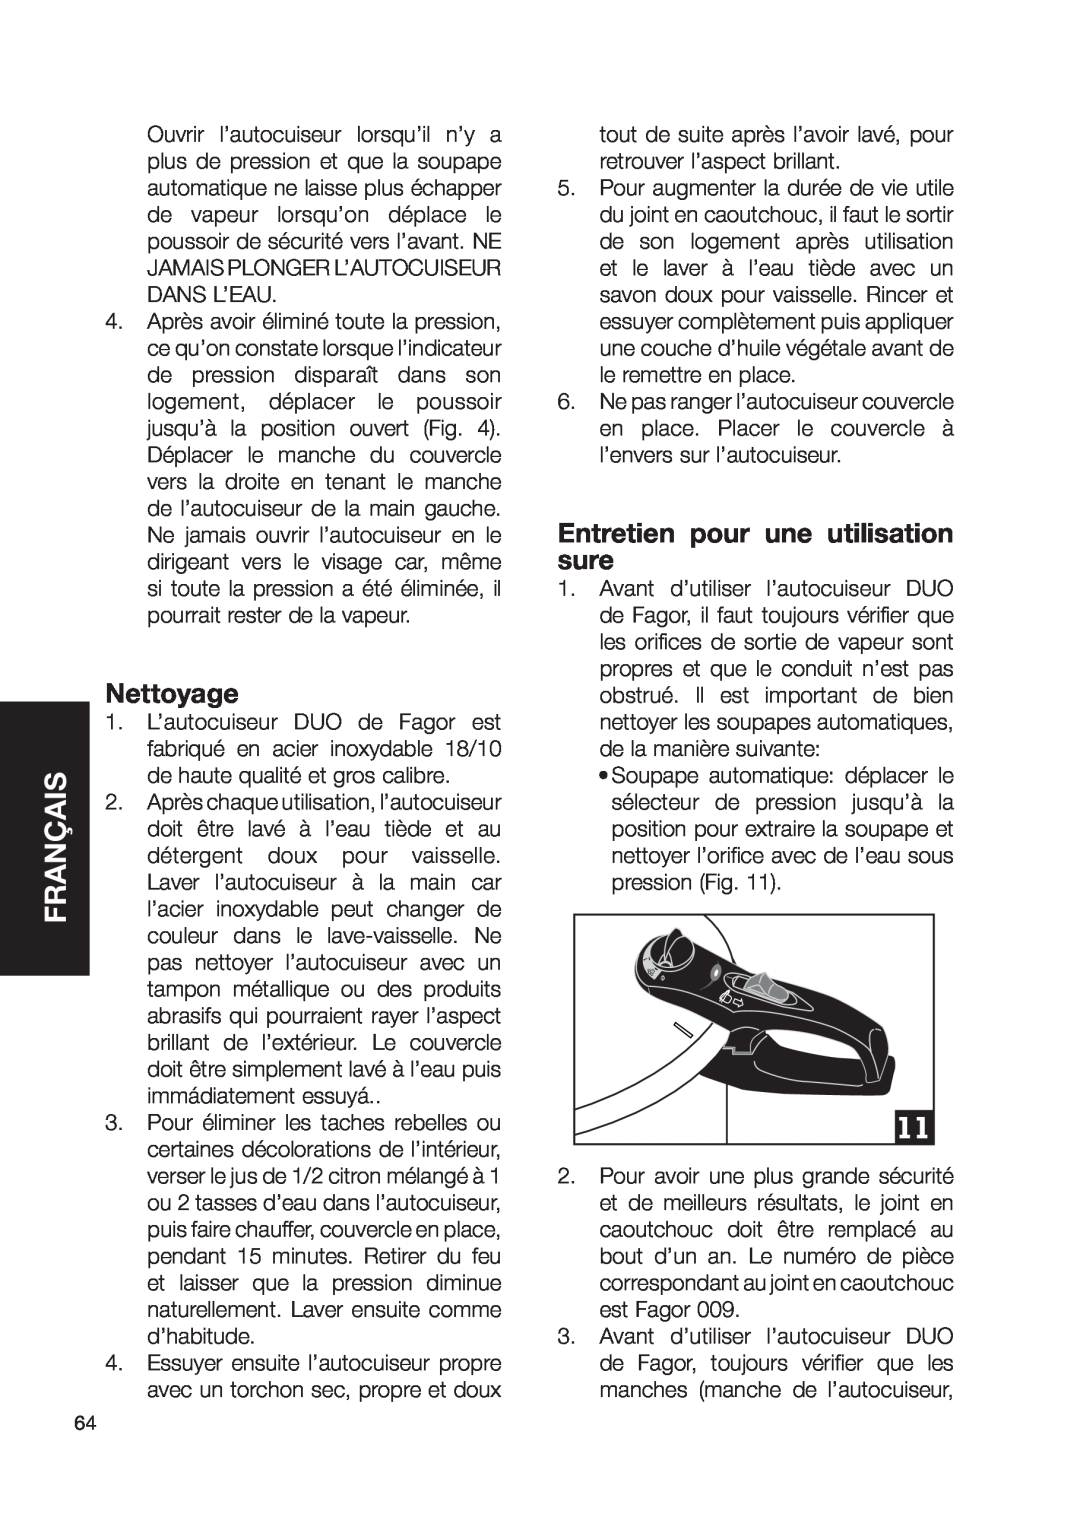 Fagor America fagor duo pressure cooker user manual Nettoyage, Entretien pour une utilisation sure, Français 